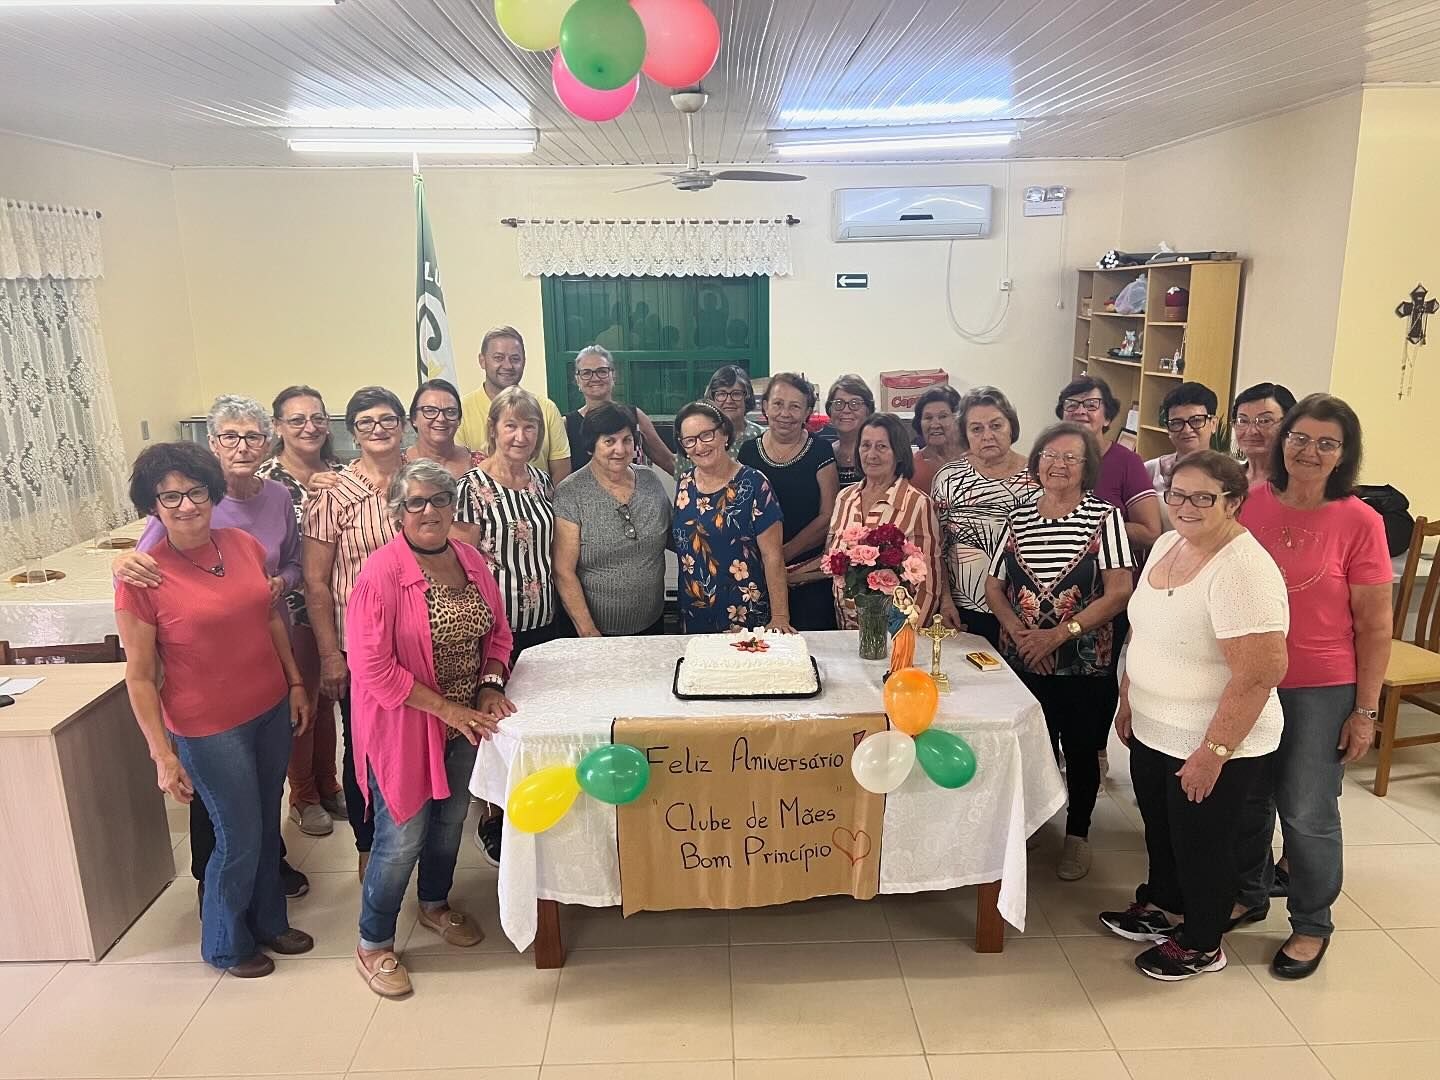 Clube de Mães Bom Princípio celebra 47 anos de história e tradição na comunidade